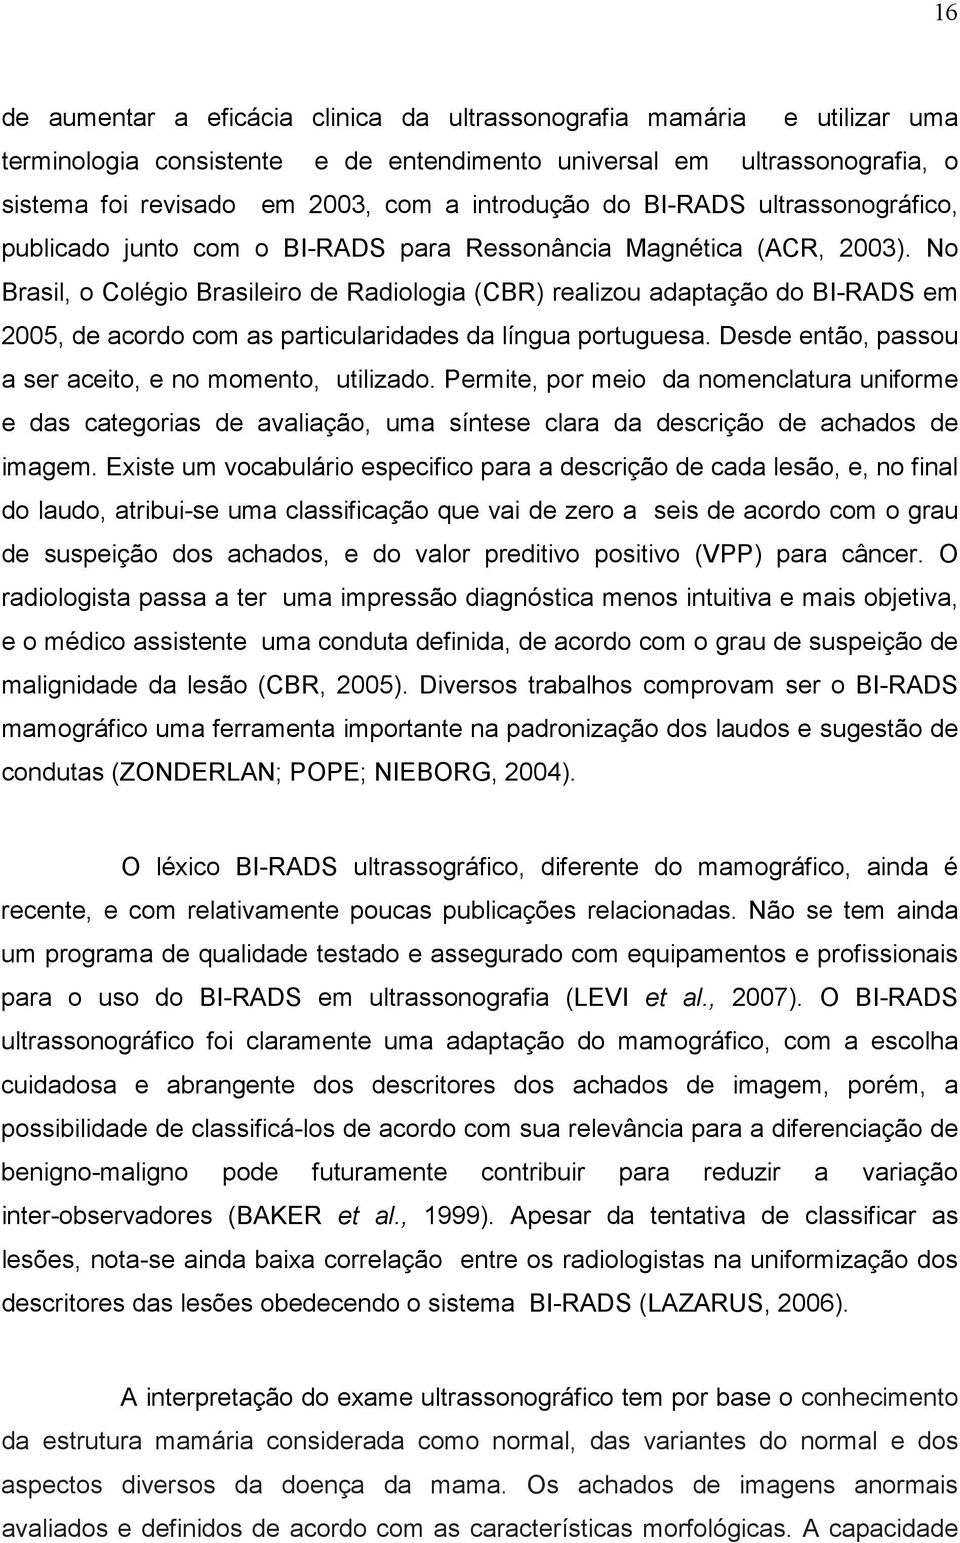 No Brasil, o Colégio Brasileiro de Radiologia (CBR) realizou adaptação do BI-RADS em 2005, de acordo com as particularidades da língua portuguesa.